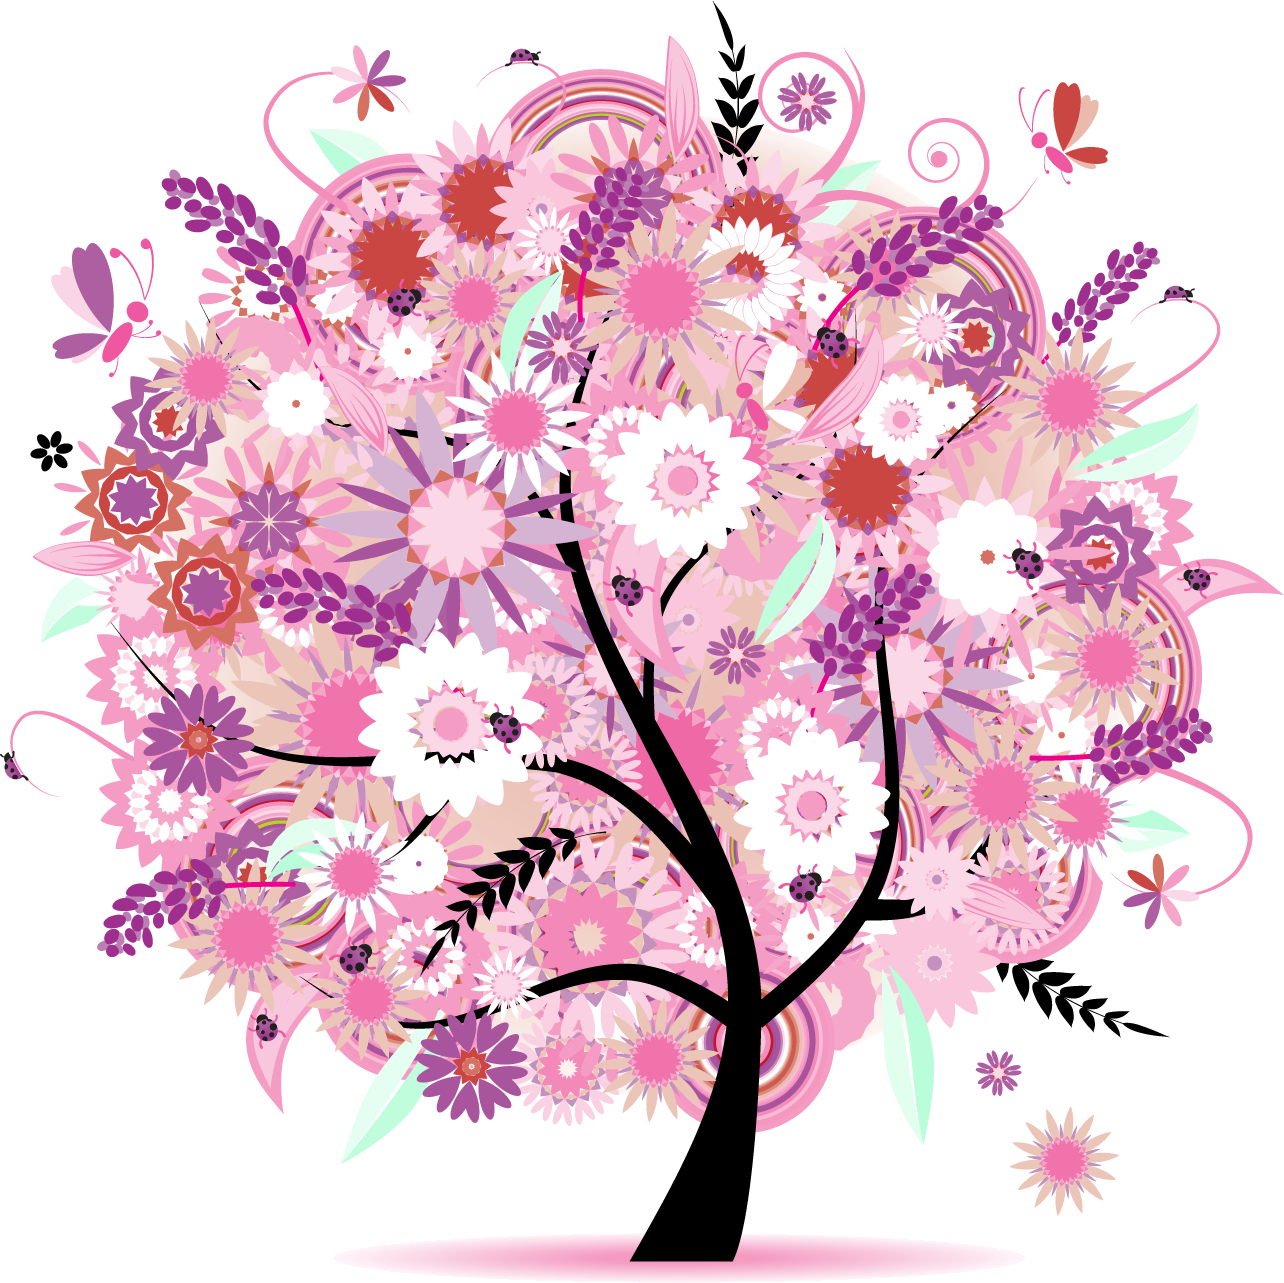 ポップでかわいい花のイラスト フリー素材 No 270 春の樹木と蝶